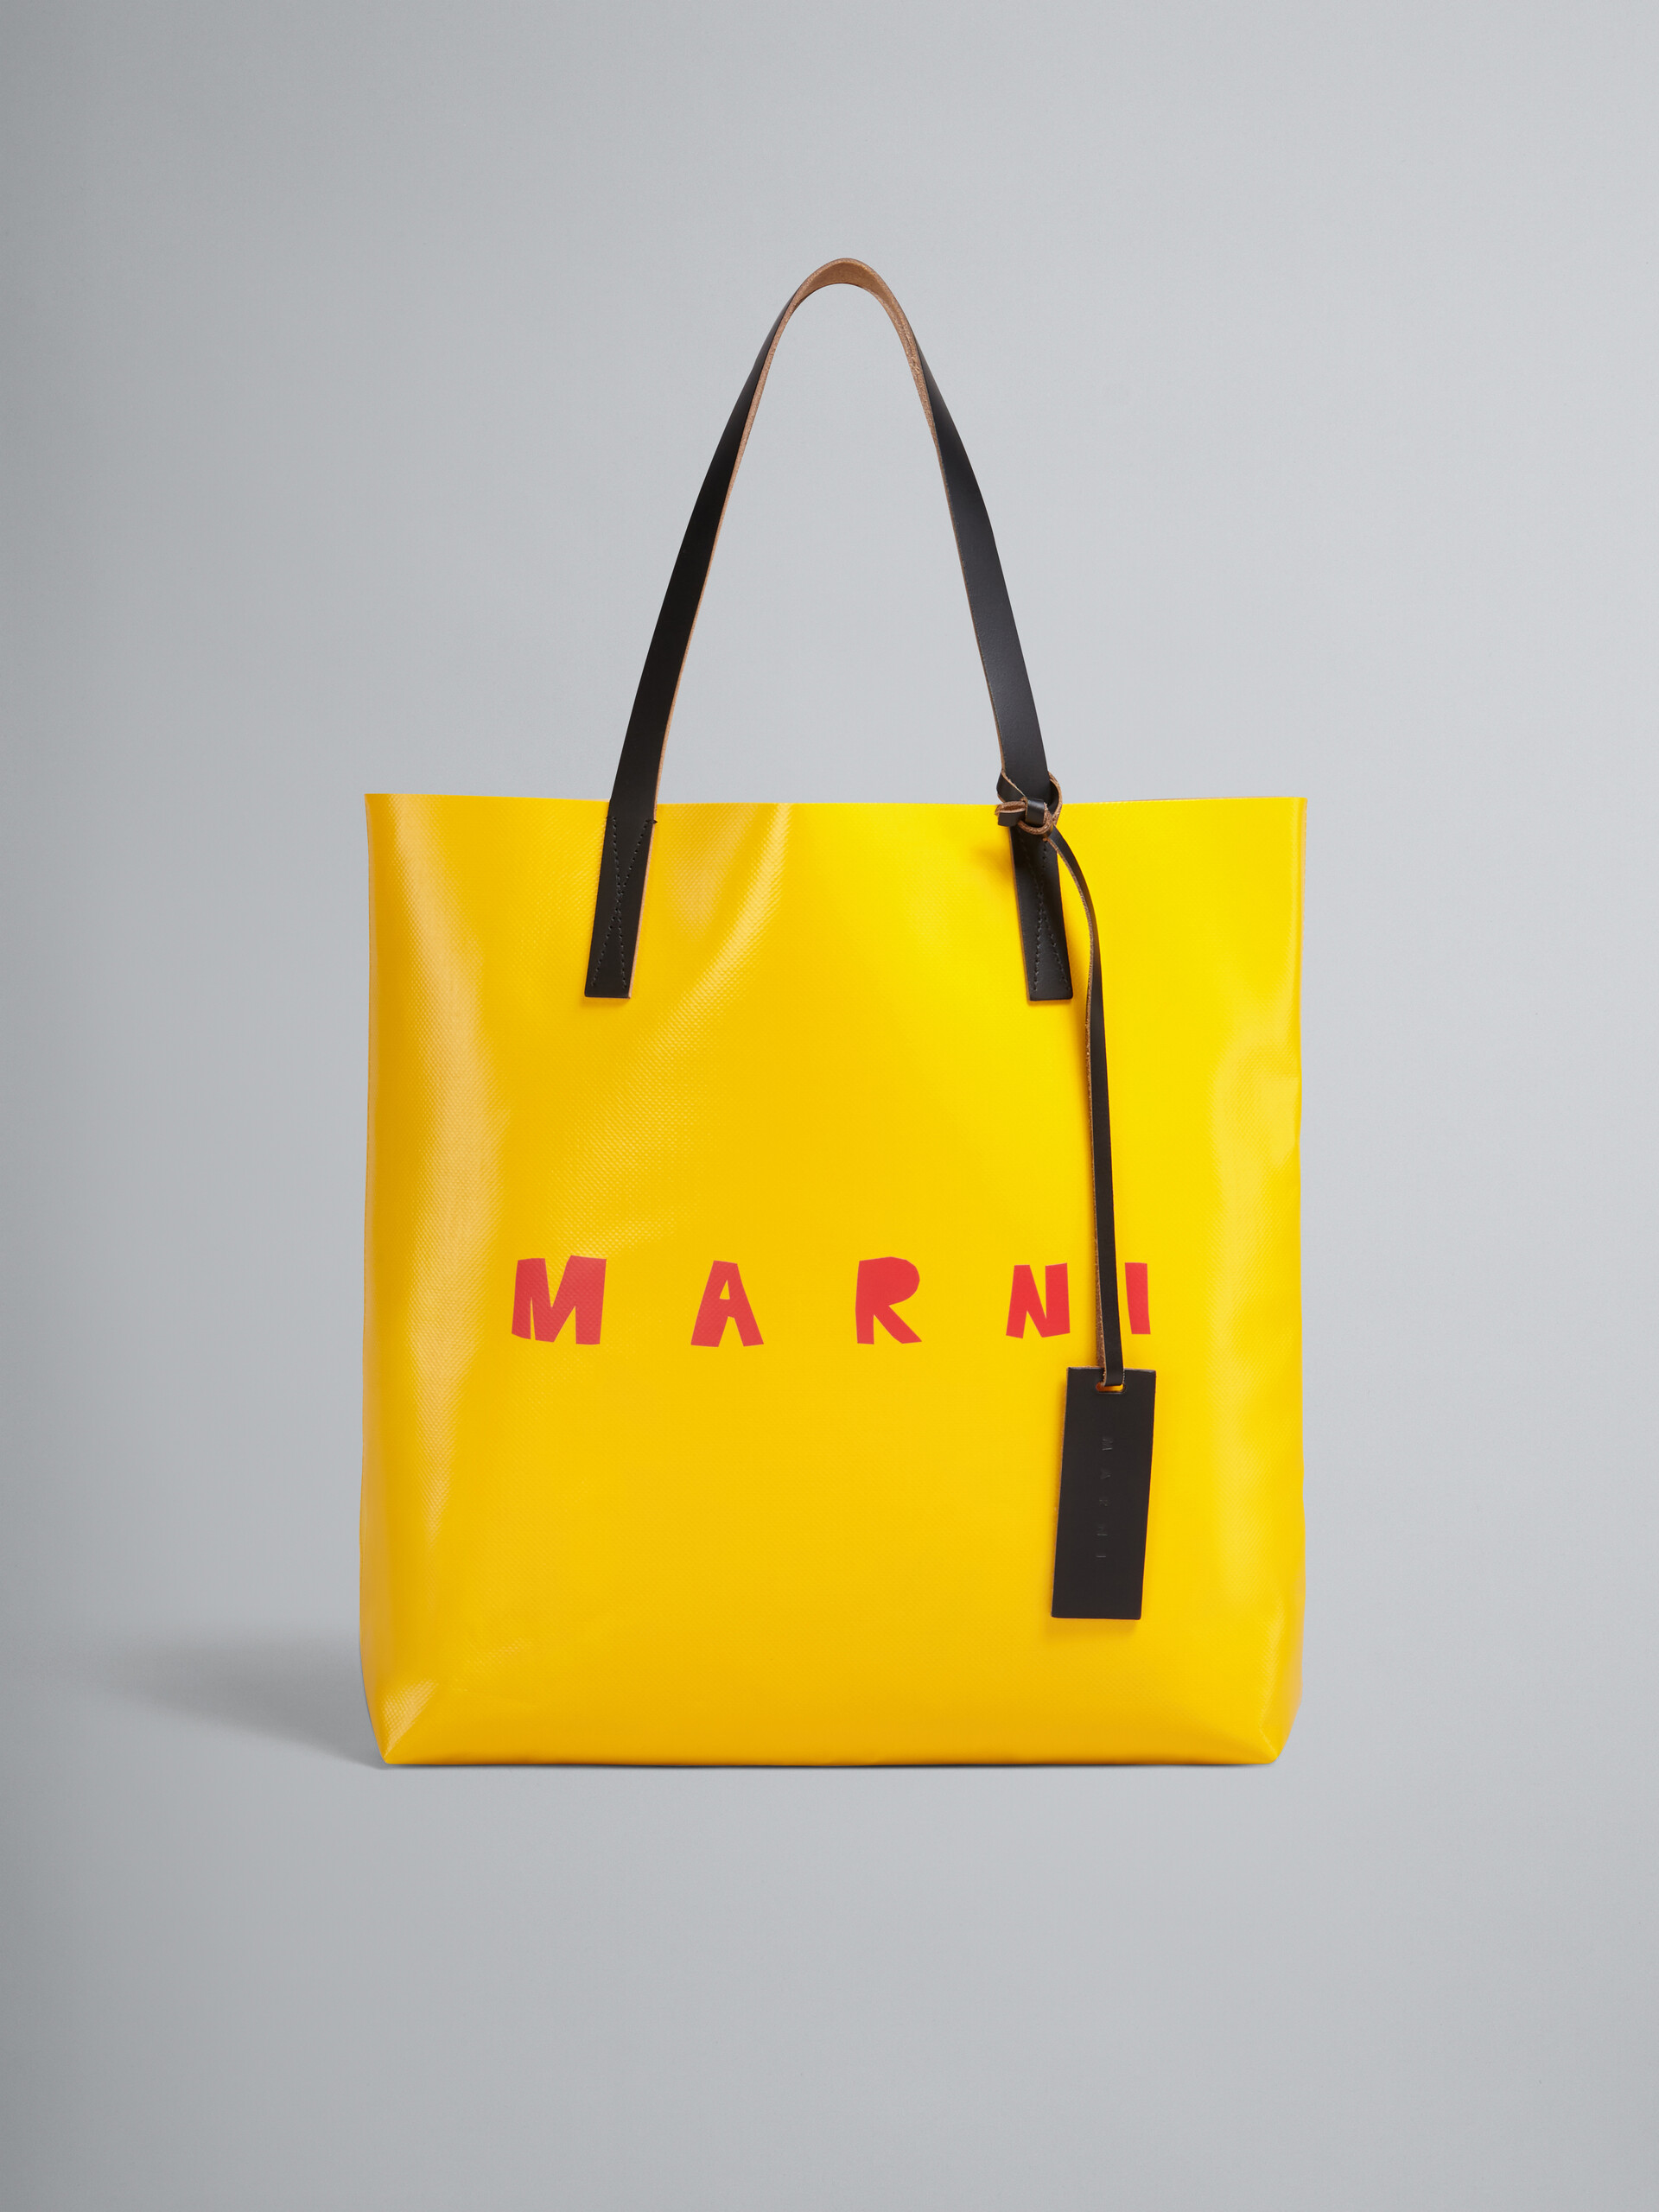 Borsa shopping in PVC con manici in pelle e logo Marni gialla e beige - Borse shopping - Image 1